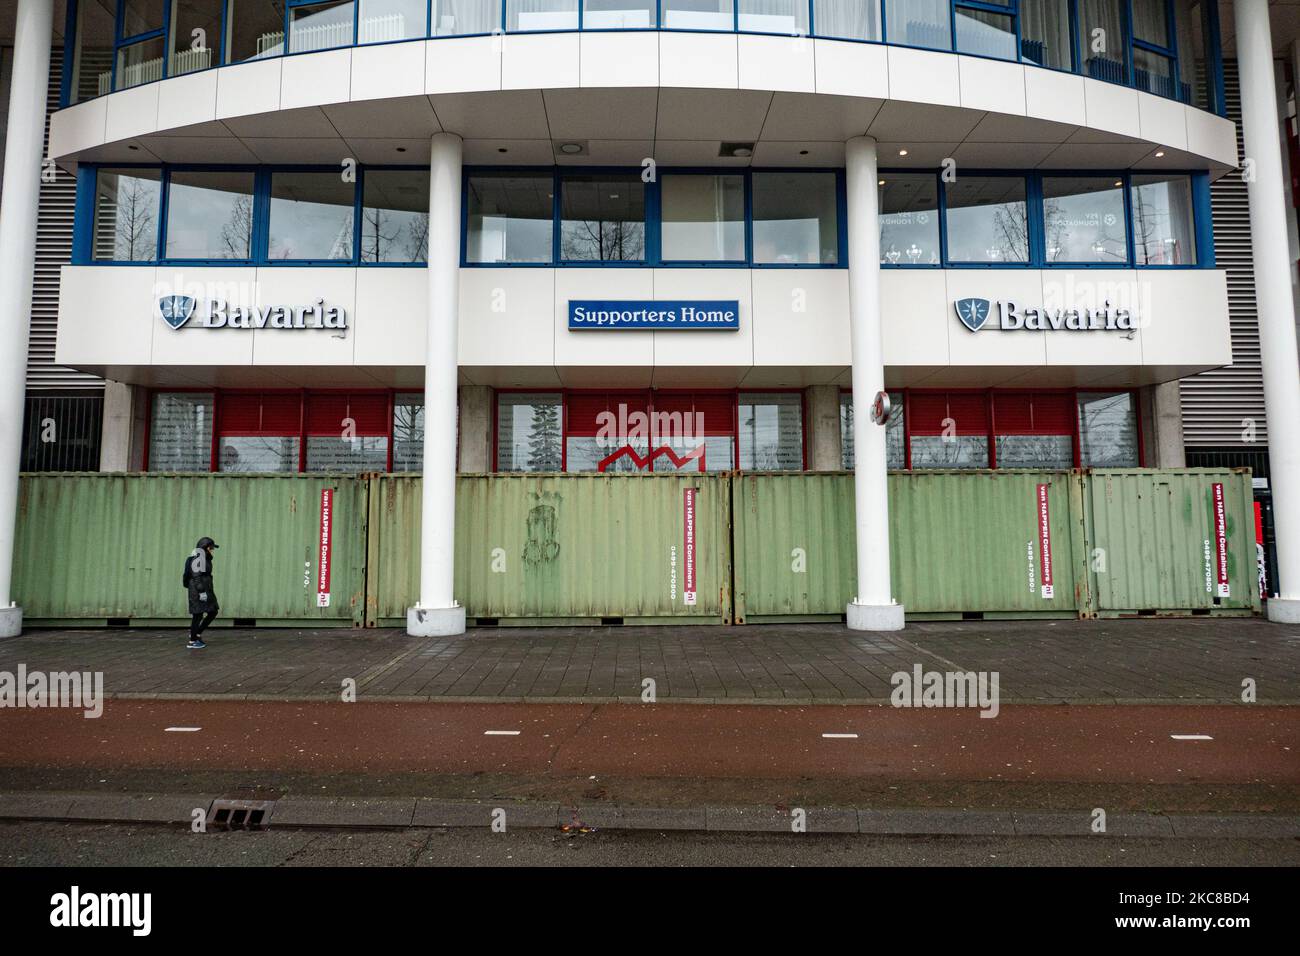 Das Philips Stadion, PSV-Clubstadion in der niederländischen Stadt Eindhoven, ist mit Schiffscontainern verbarrikadiert, um das Gebäude, das Museum, den Fanshop, mehrere Tore, die Bahnseite und die Fans auf der Heimseite vor Ausschreitungen und Plünderungen zu schützen, wie es in der Stadt zuvor geschah. Die Befestigung und Versiegelung der Vorderseite des Stadions fand statt, nachdem der Club nach Angaben der lokalen Medien einige Drohungen erhalten hatte. Eindhoven sah sich bei einem Anti-Lockdown-/Anti-Ausgangssperre-Protest einigen gewalttätigen Zusammenstößen ausgesetzt, die zu Kämpfen mit der Polizei, Plünderungen von Geschäften und Schäden an der Stadt wurden. Die niederländische Regierung verhängt in J Stockfoto